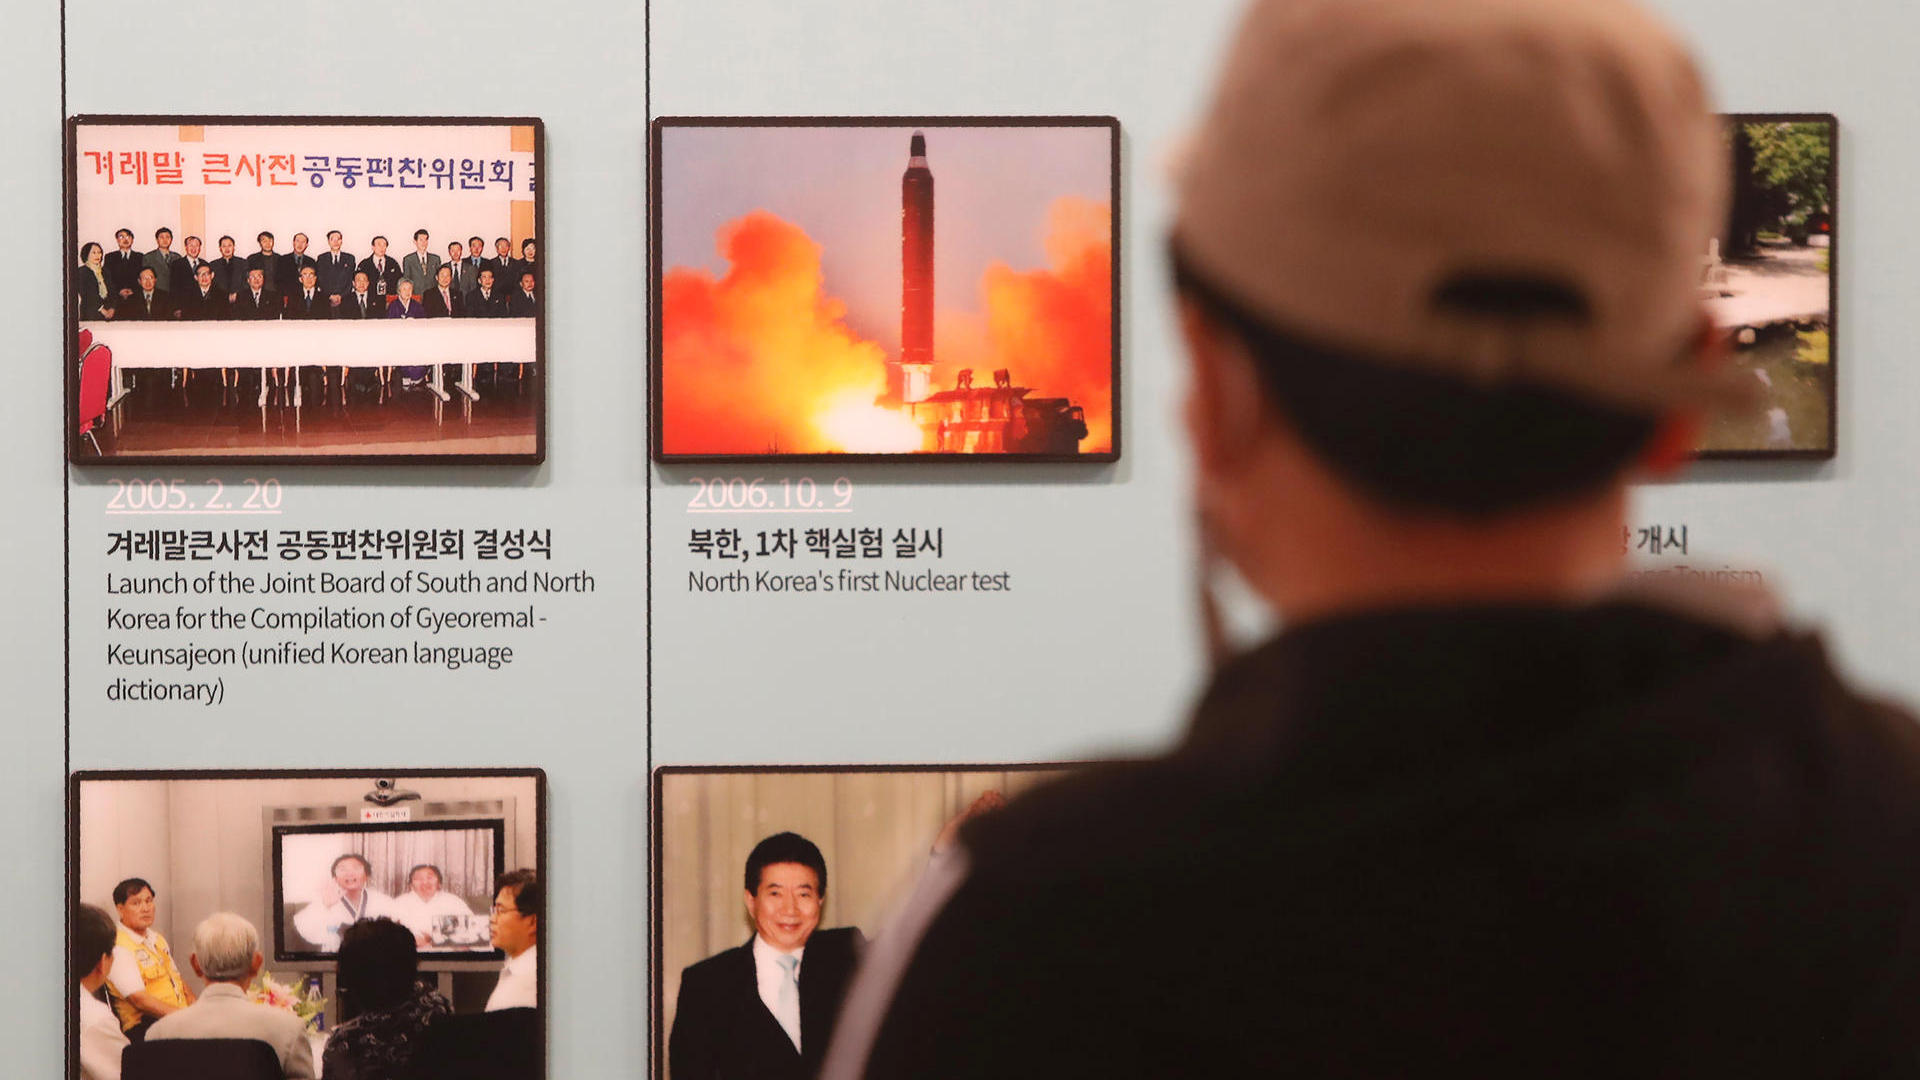 Nordkorea feuert "nicht identifizierte Geschosse" ins Meer – Südkorea alarmiert